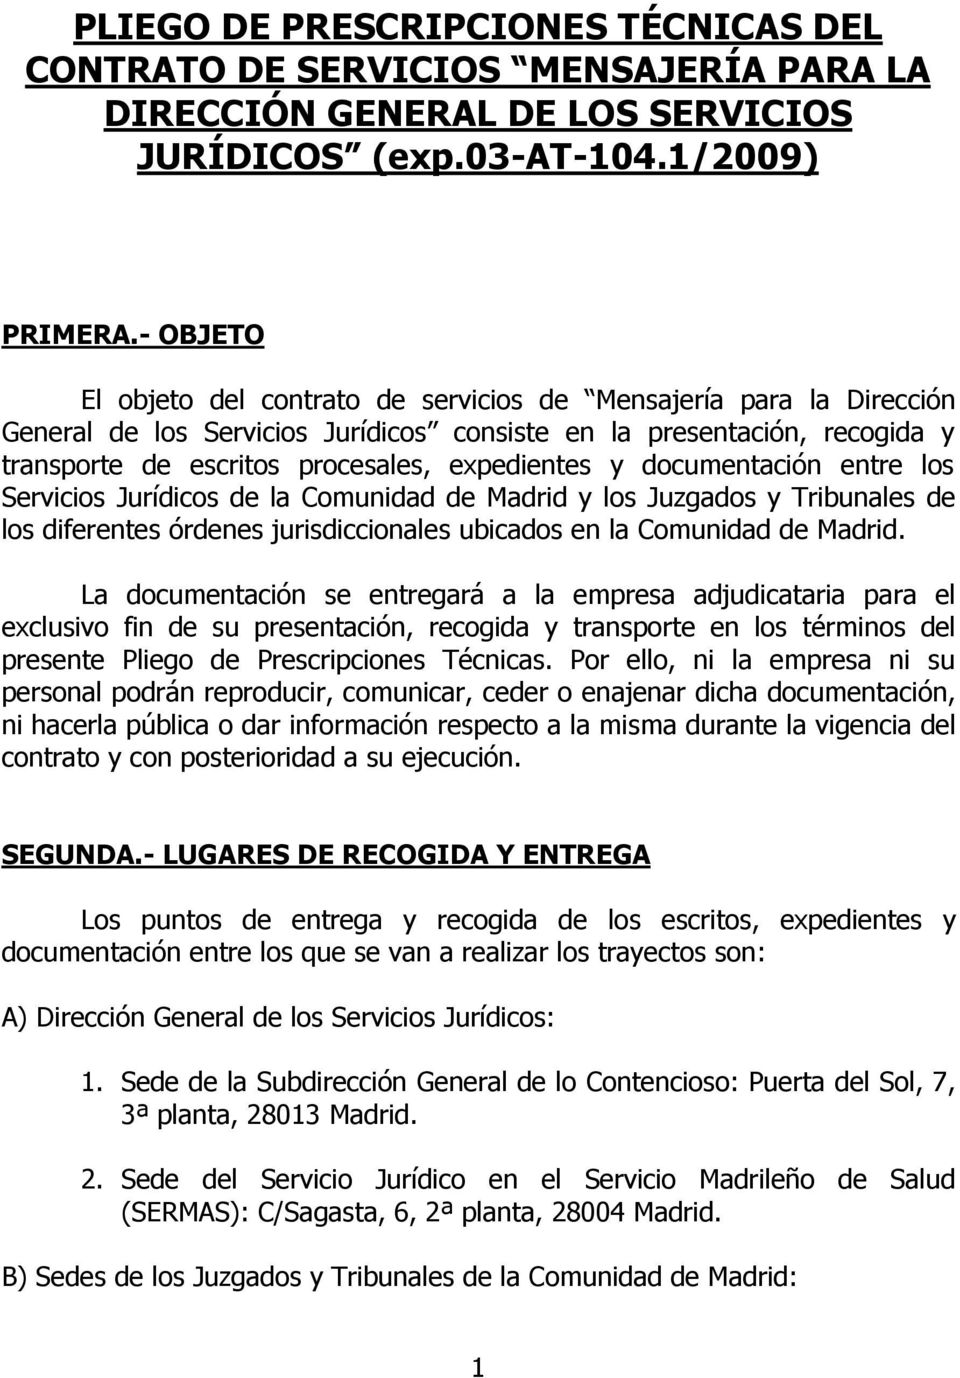 y documentación entre los Servicios Jurídicos de la Comunidad de Madrid y los Juzgados y Tribunales de los diferentes órdenes jurisdiccionales ubicados en la Comunidad de Madrid.